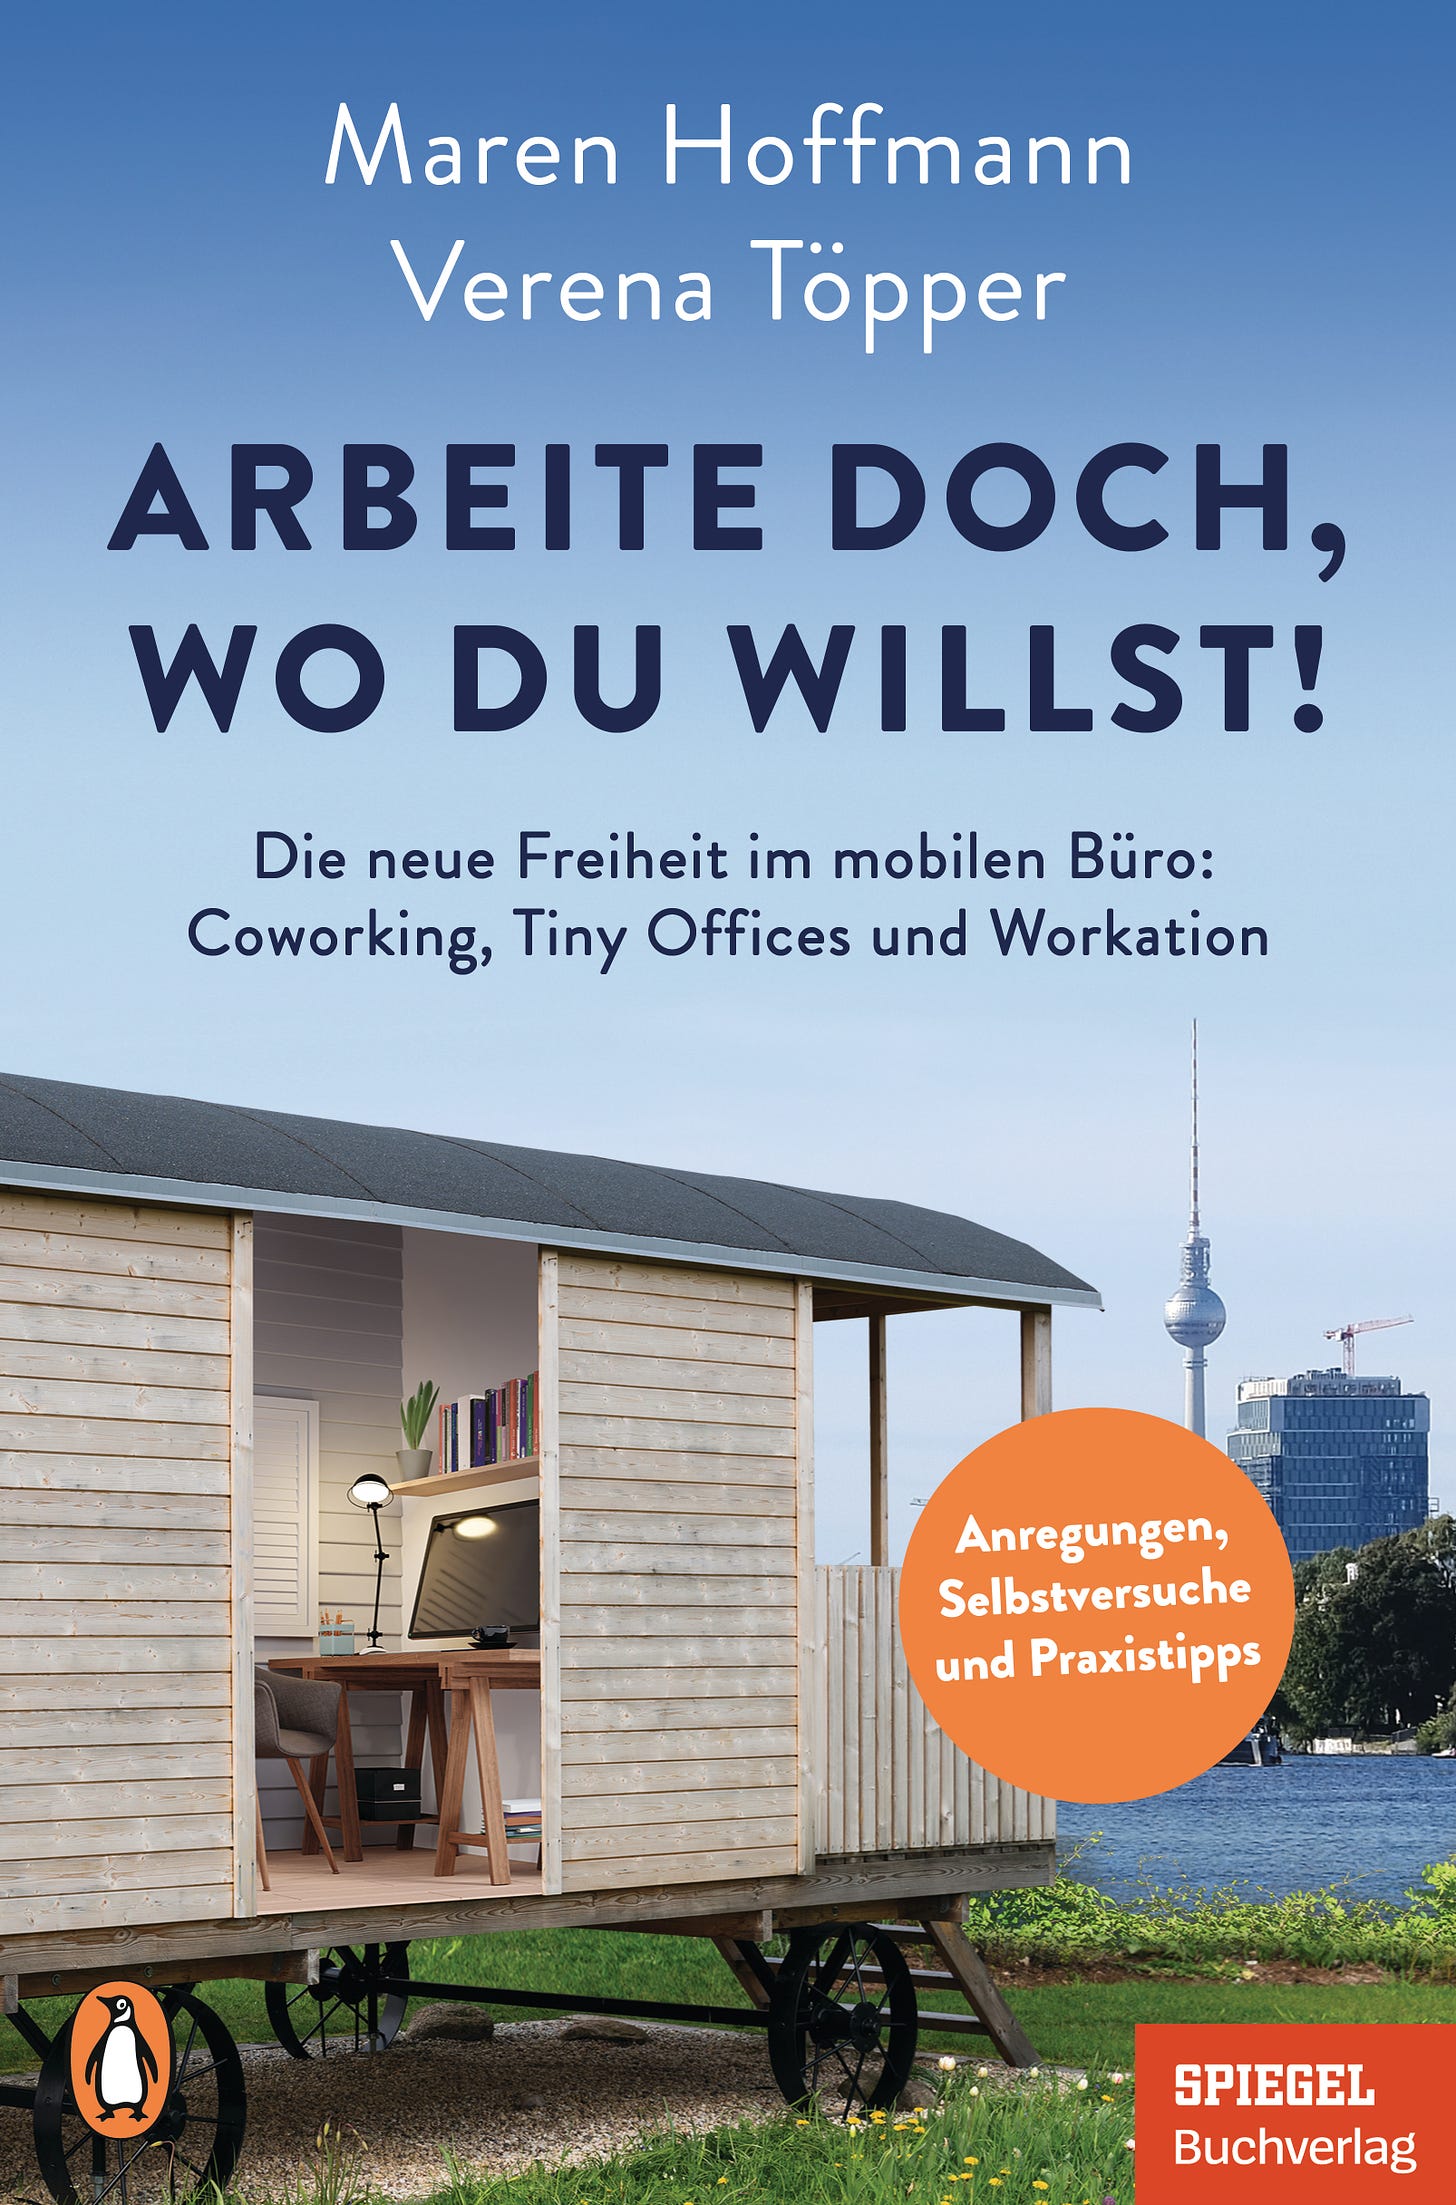 Das Buchcover zu "Arbeite doch, wo du willst!" zeigt einen Bauwagen mit Blick auf den Berliner Fernsehturm und die Spree.